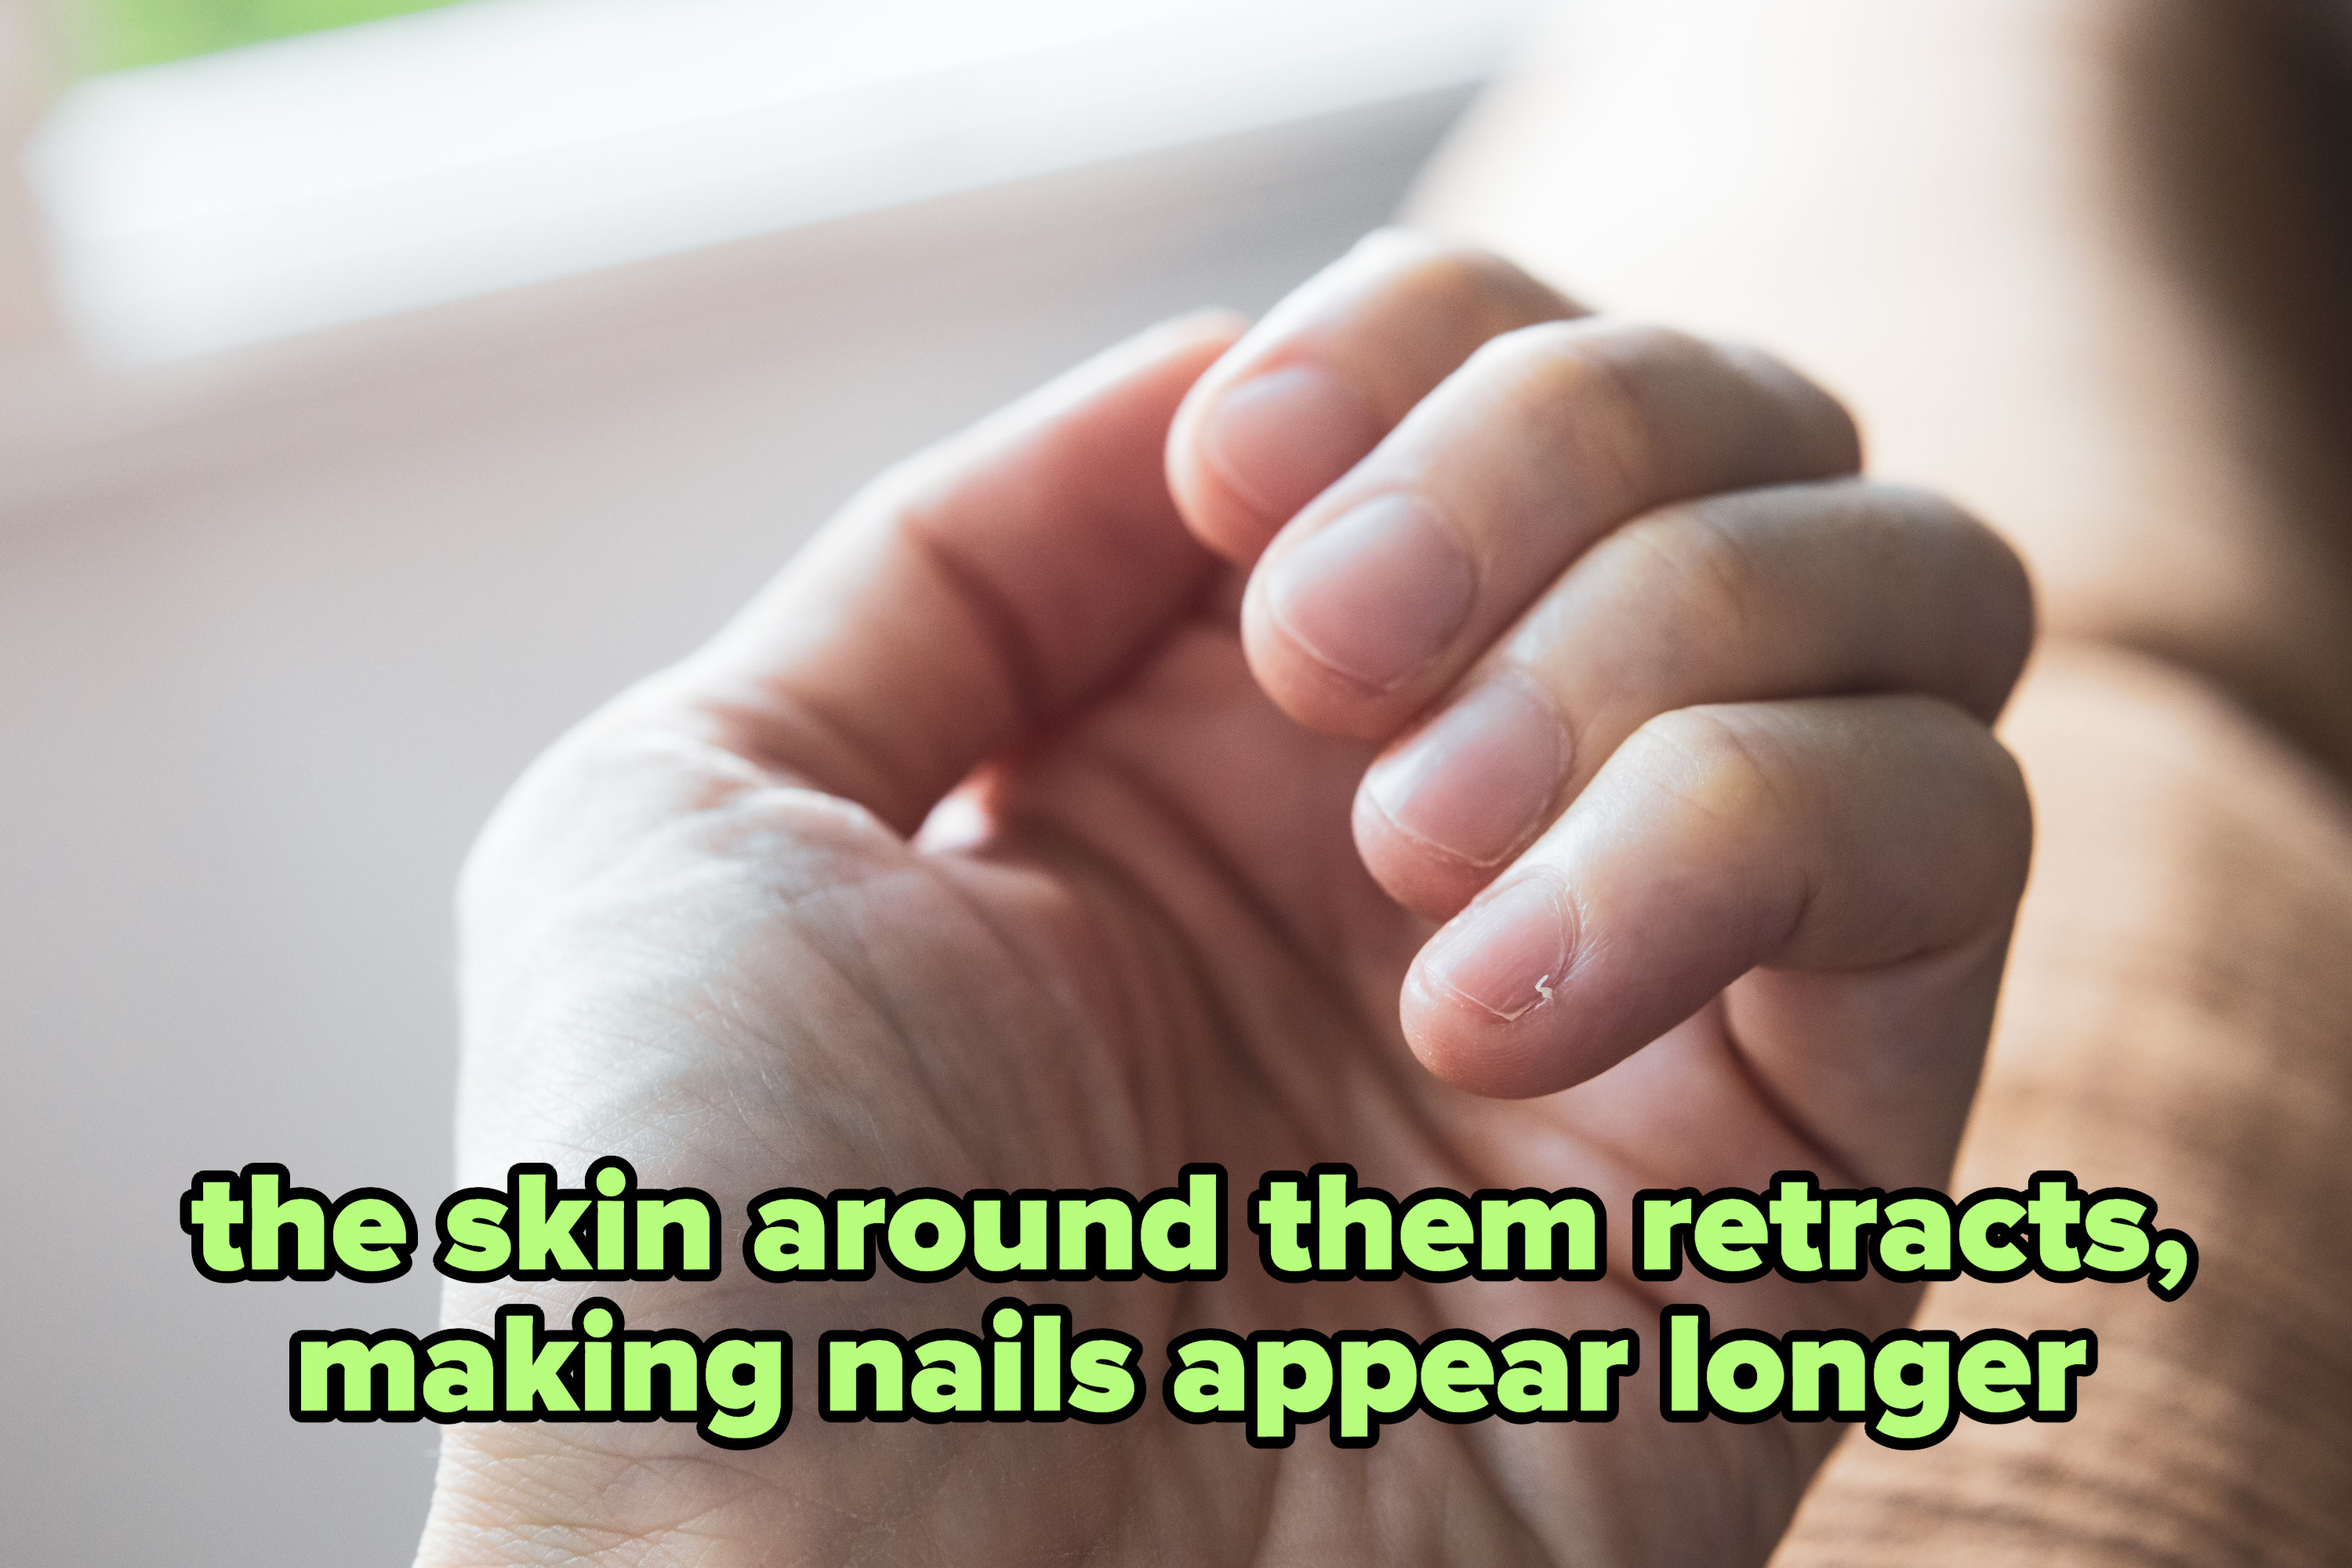 的手指甲上的标题,“他们周围的皮肤收缩,使指甲显得longer"